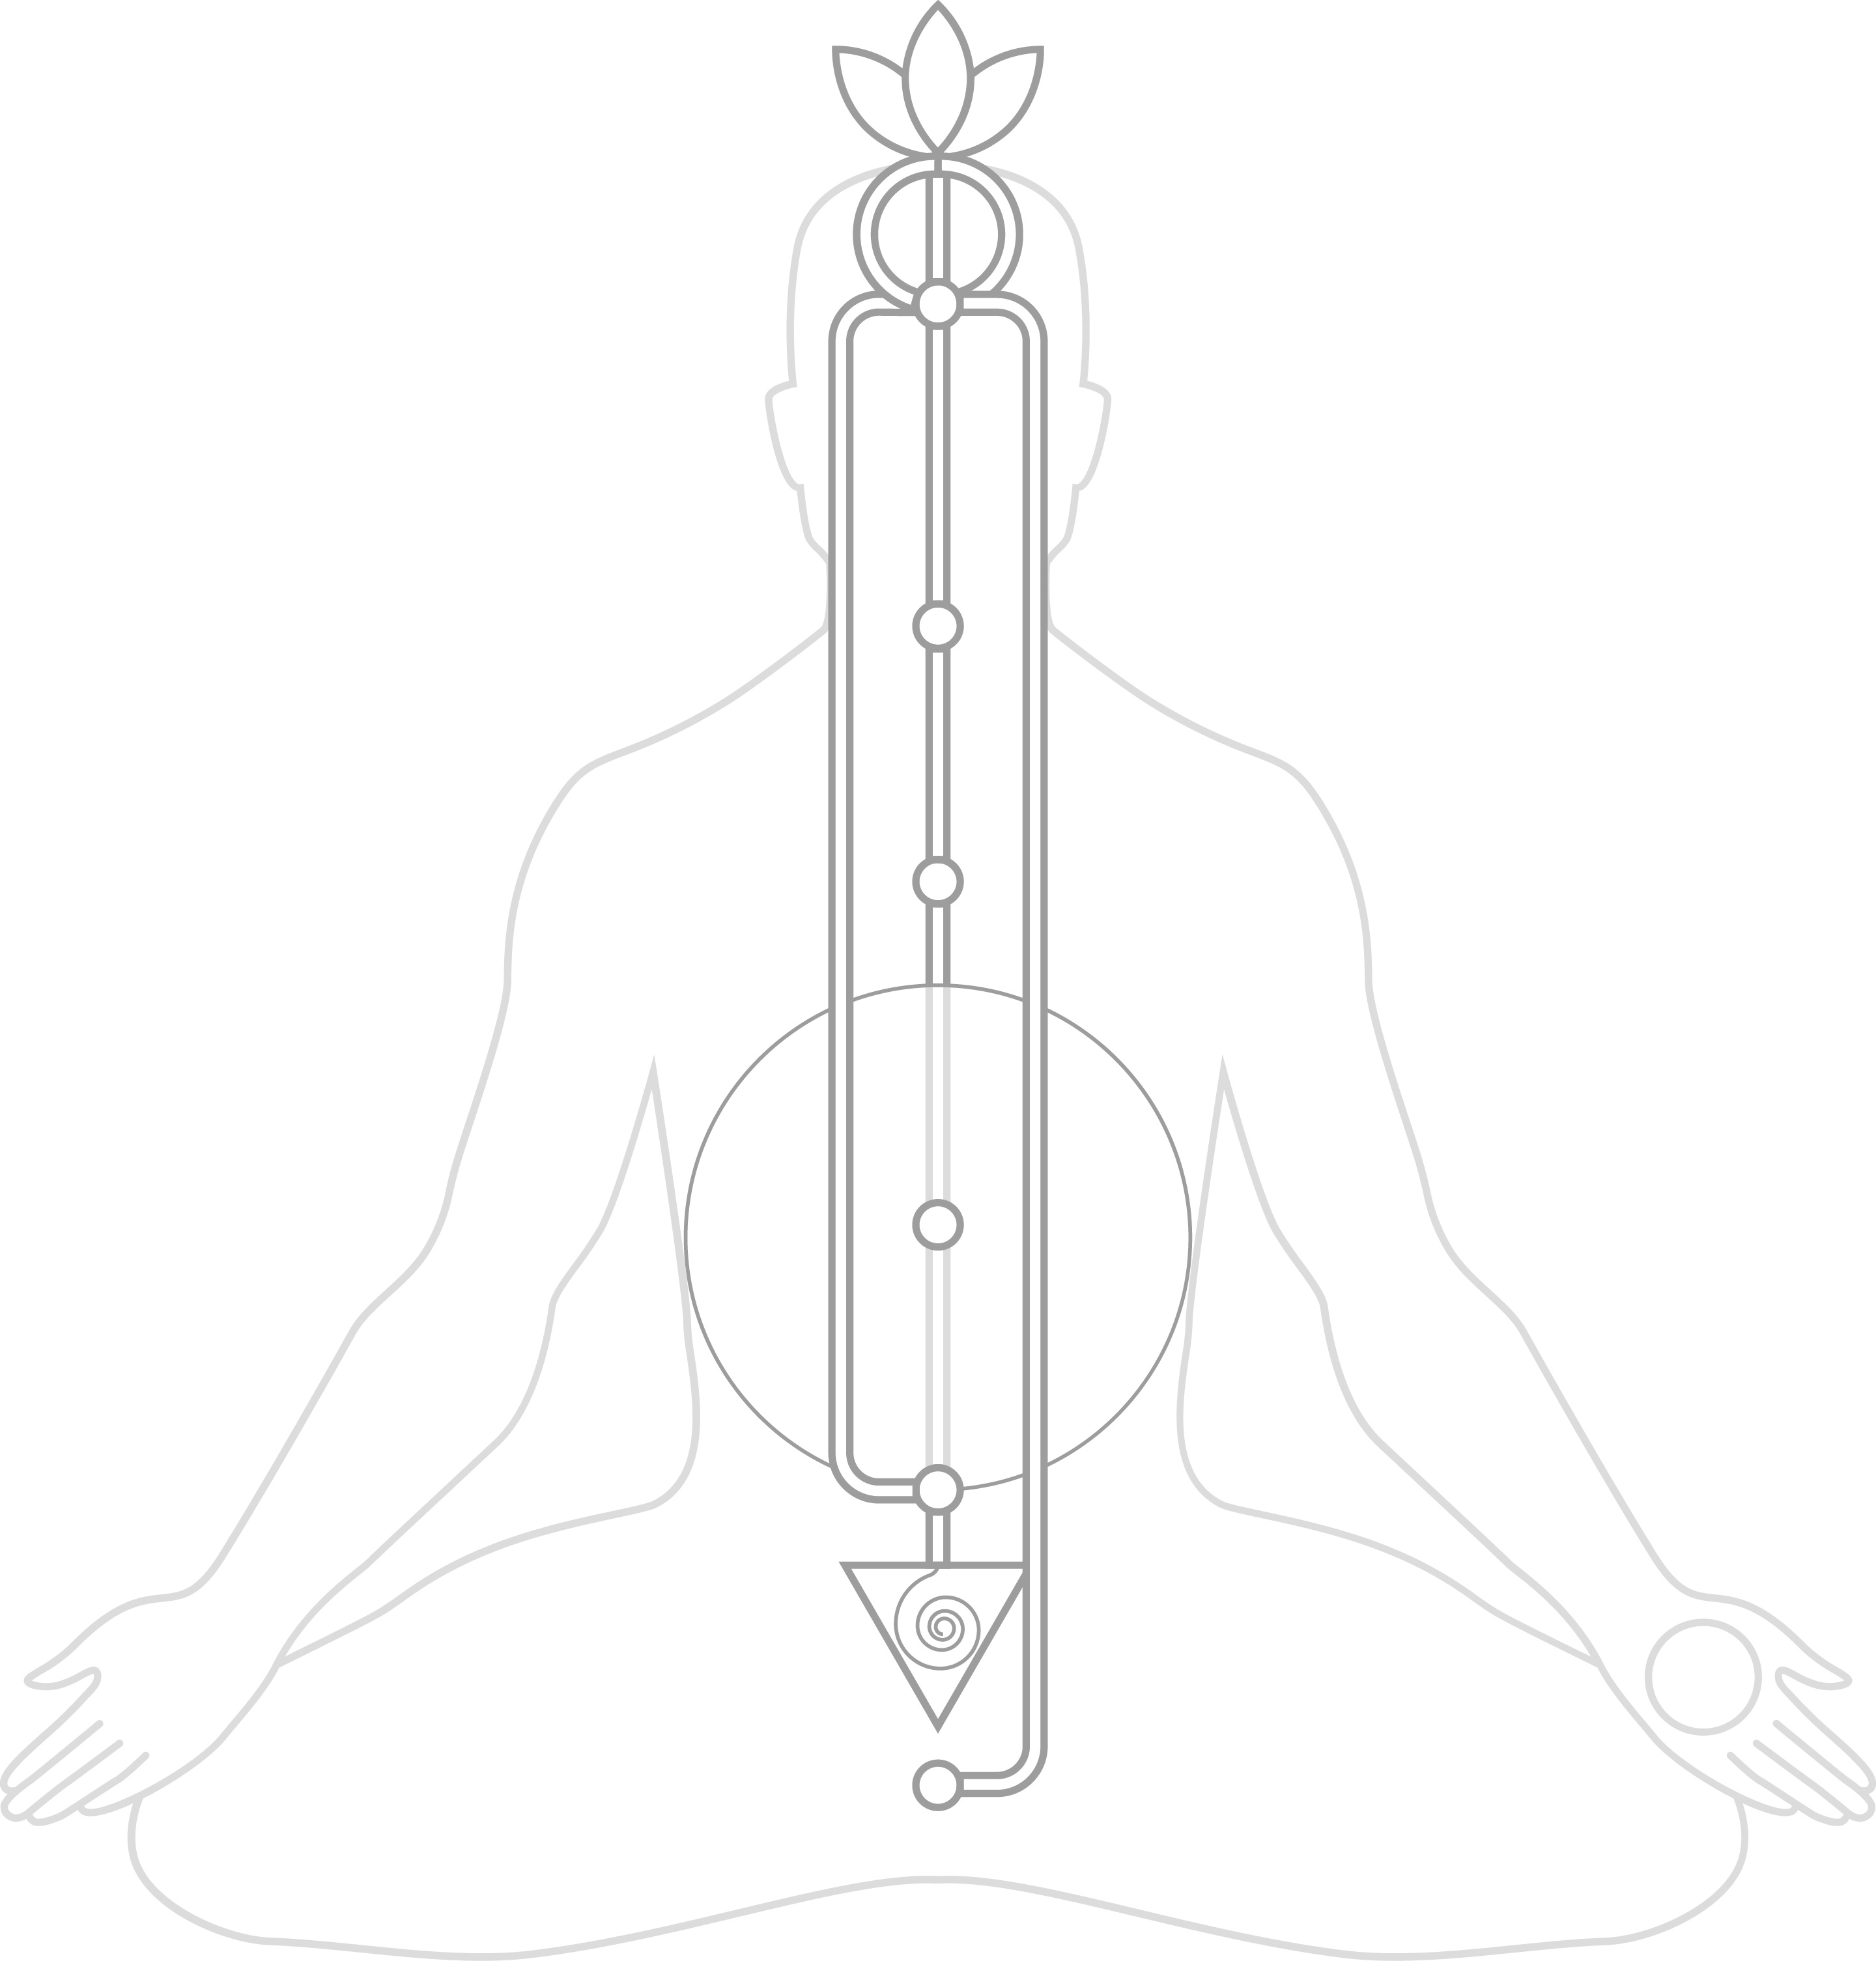 Диаграма на финото тяло: Схематично очертан човек, седнал за медитация, с три вертикални линии по протежение на гръбнака, които представят левия, десния и централния канал. По централната линия има шест енергийни центъра, показани като кръгове, а седмият център е изобразен като лотос над главата.